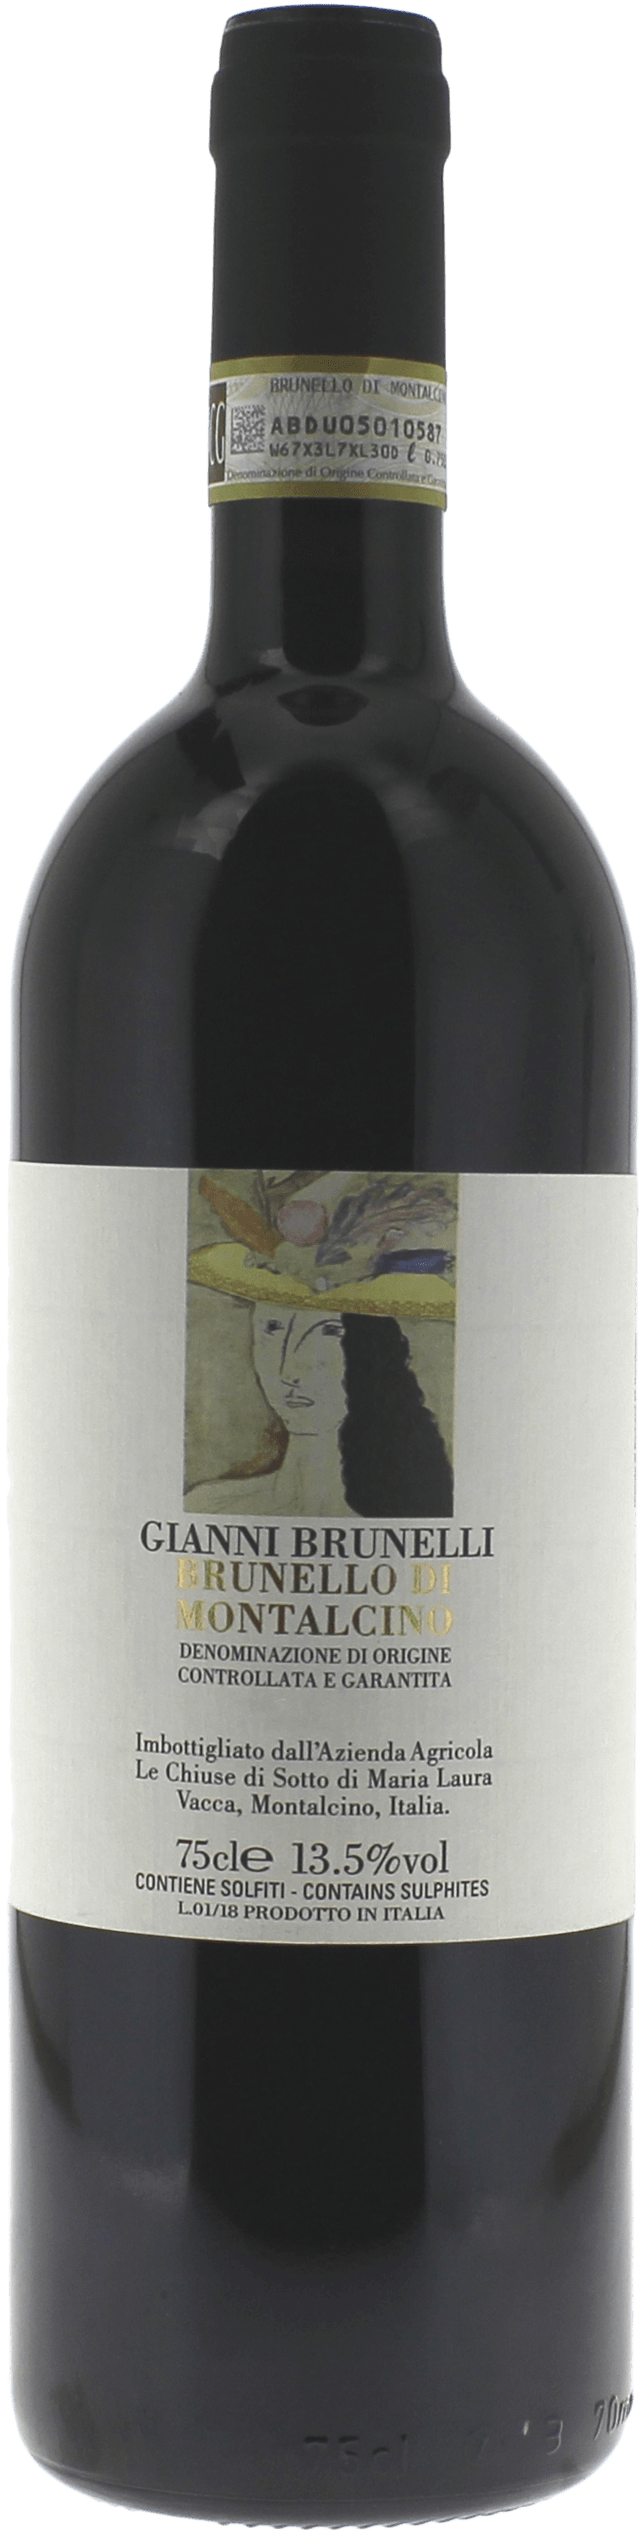 Gianni brunelli -rosso di montalcino 2018  , Vin italien